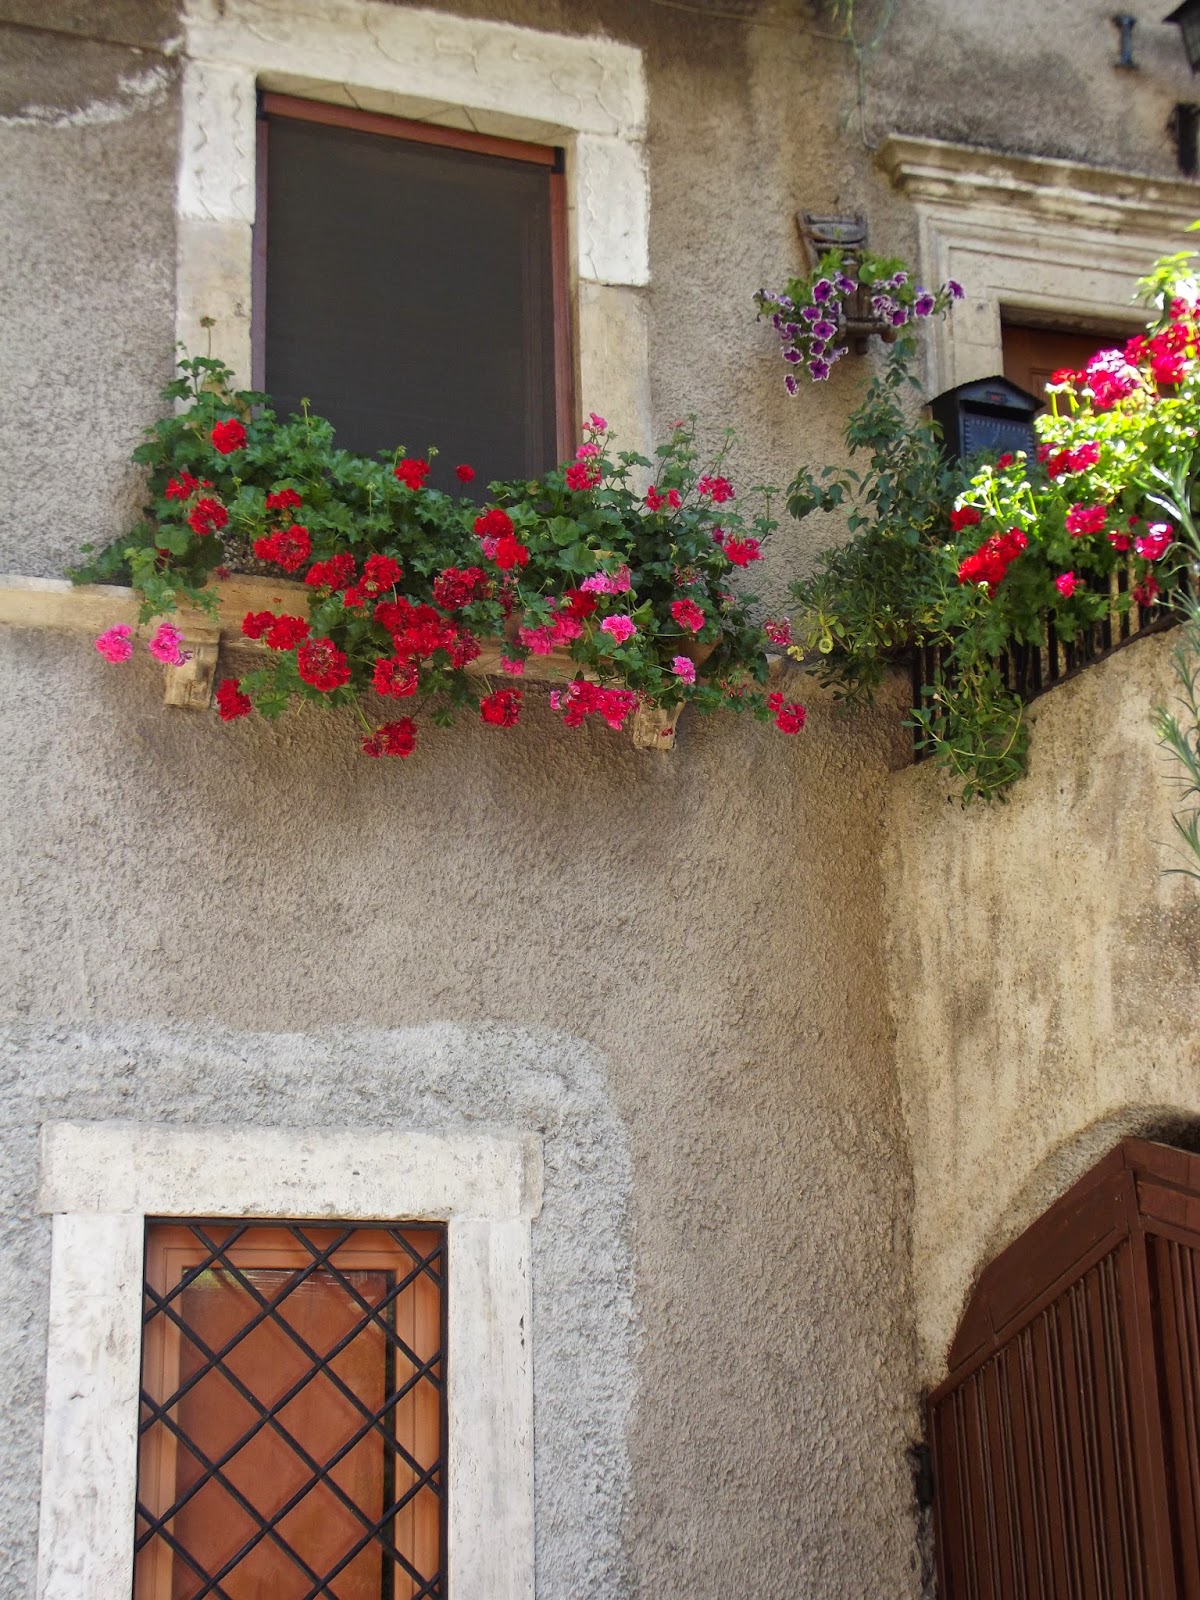 Erbe,the authentic Italian beauty culture.: Geranium, Evening primrose ...